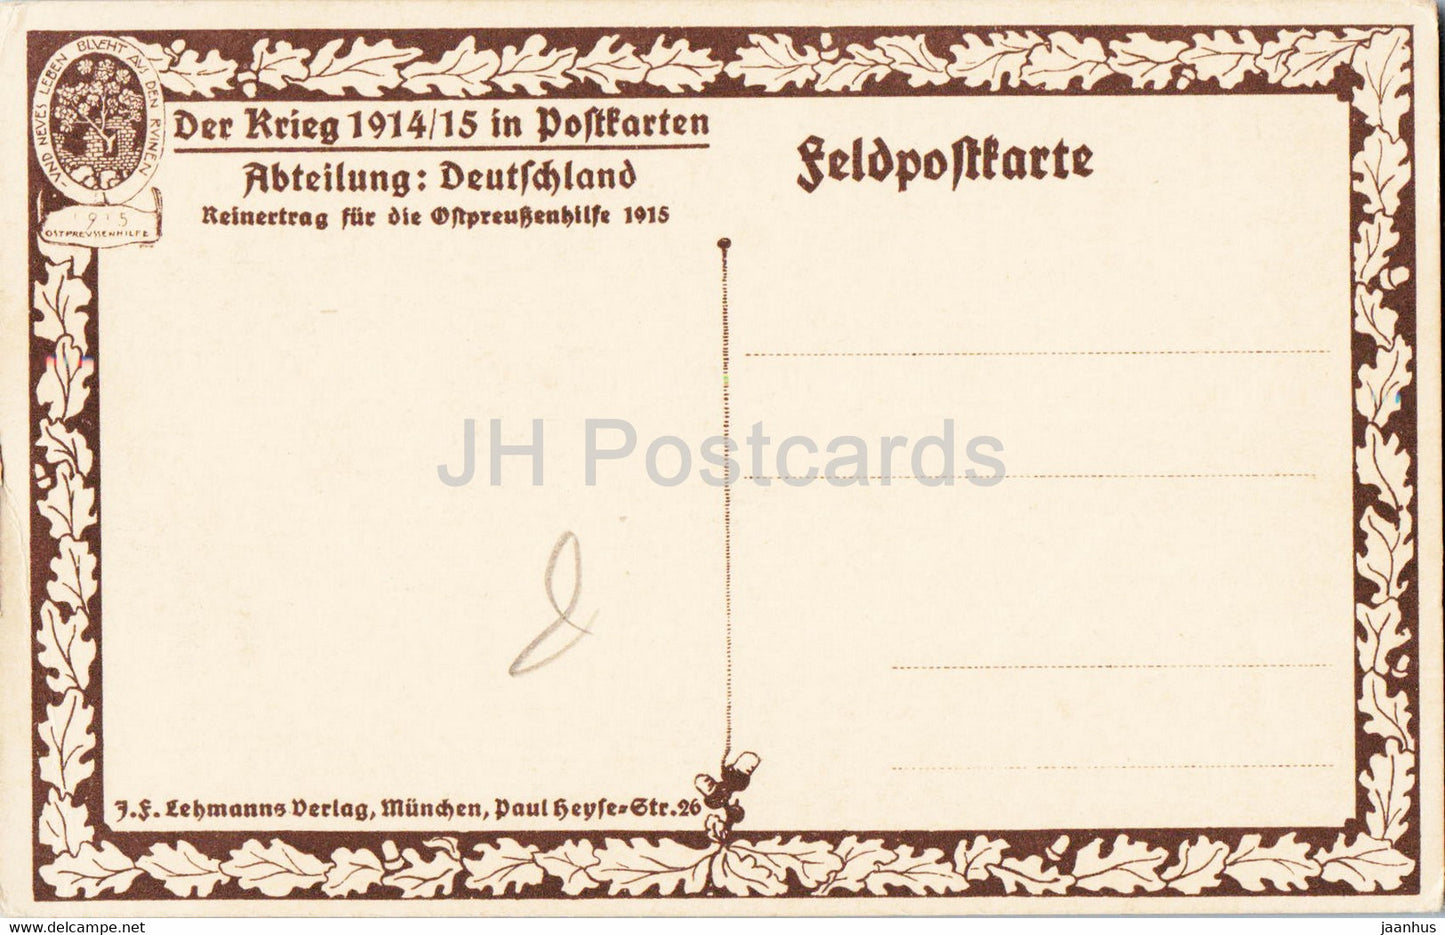 Molsheim i Elsass - Der Krieg 1914/15 in Postkarten - Feldpostkarte - alte Postkarte - Frankreich - unbenutzt